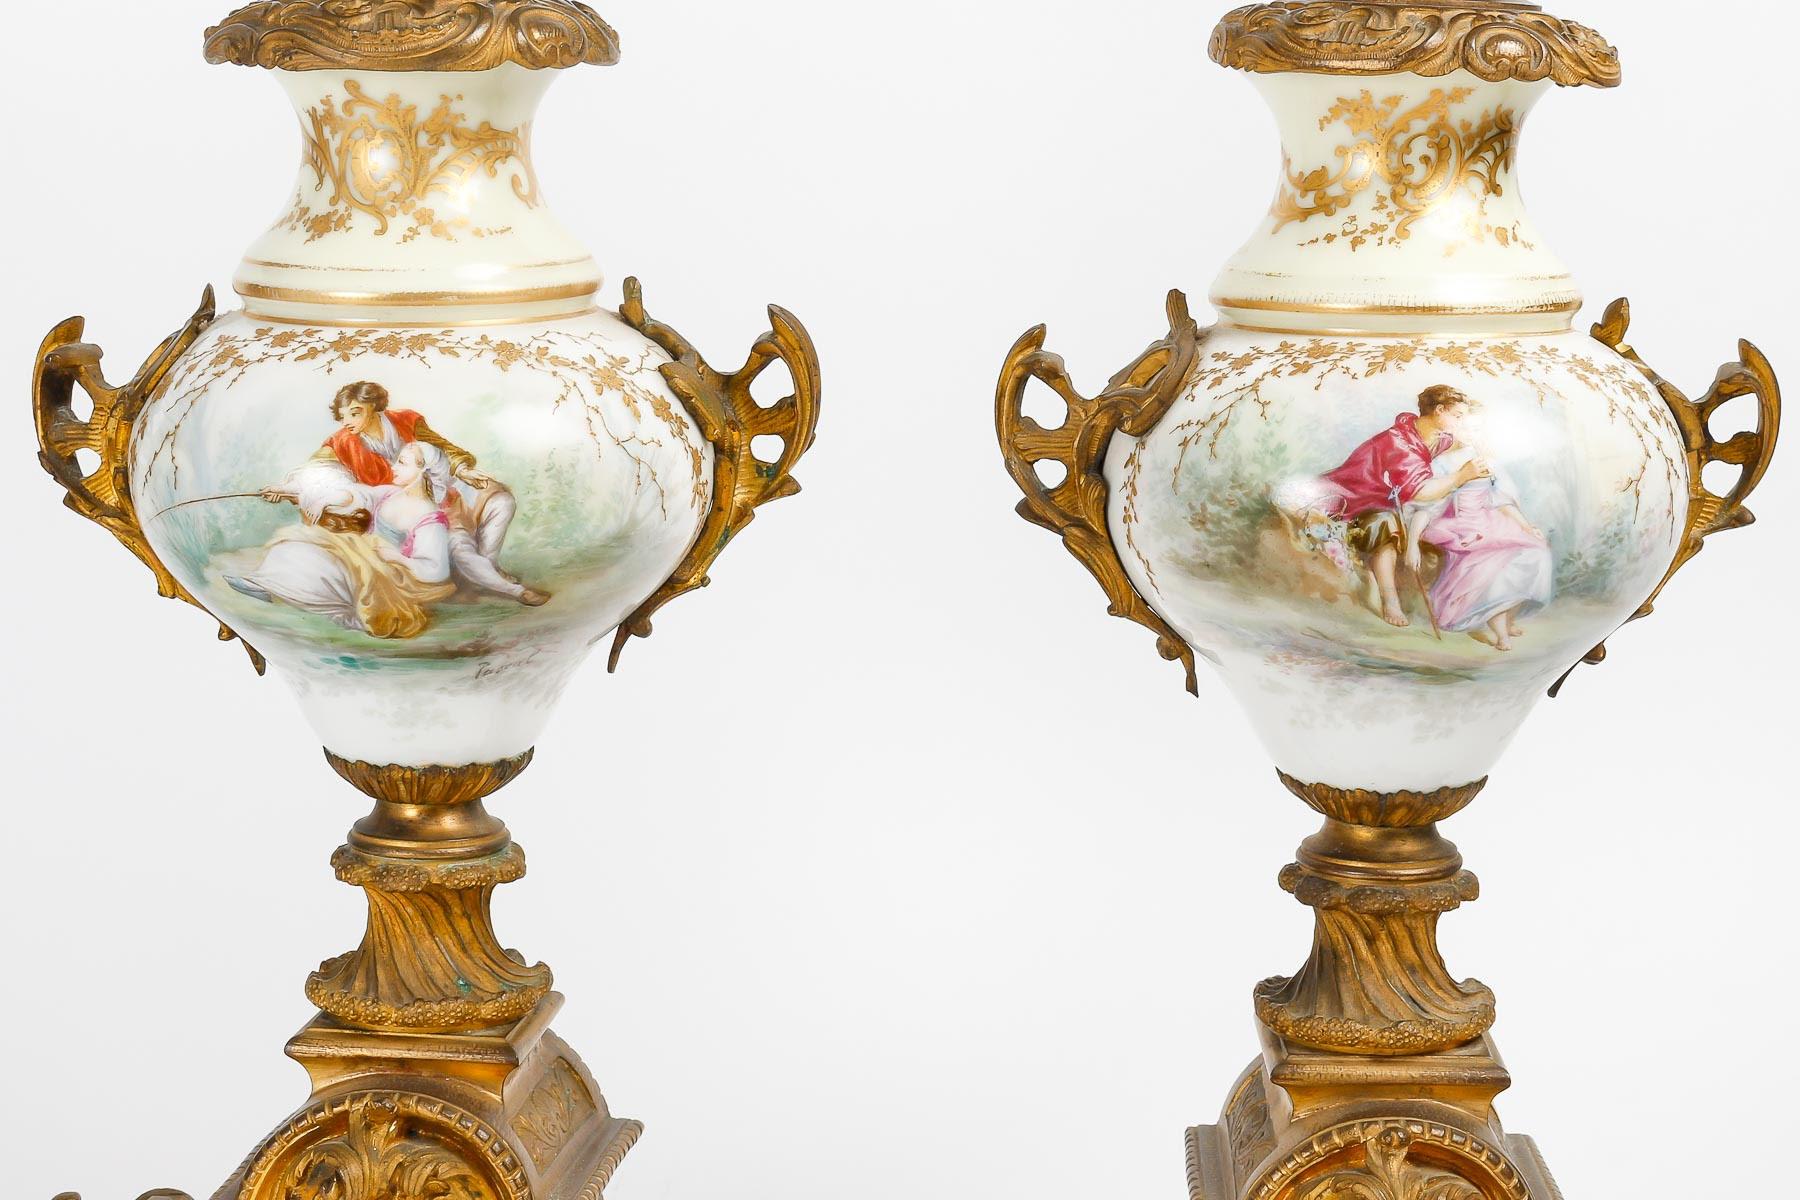 Napoleon III 19th Century Sèvres Porcelain Mantel Set. For Sale